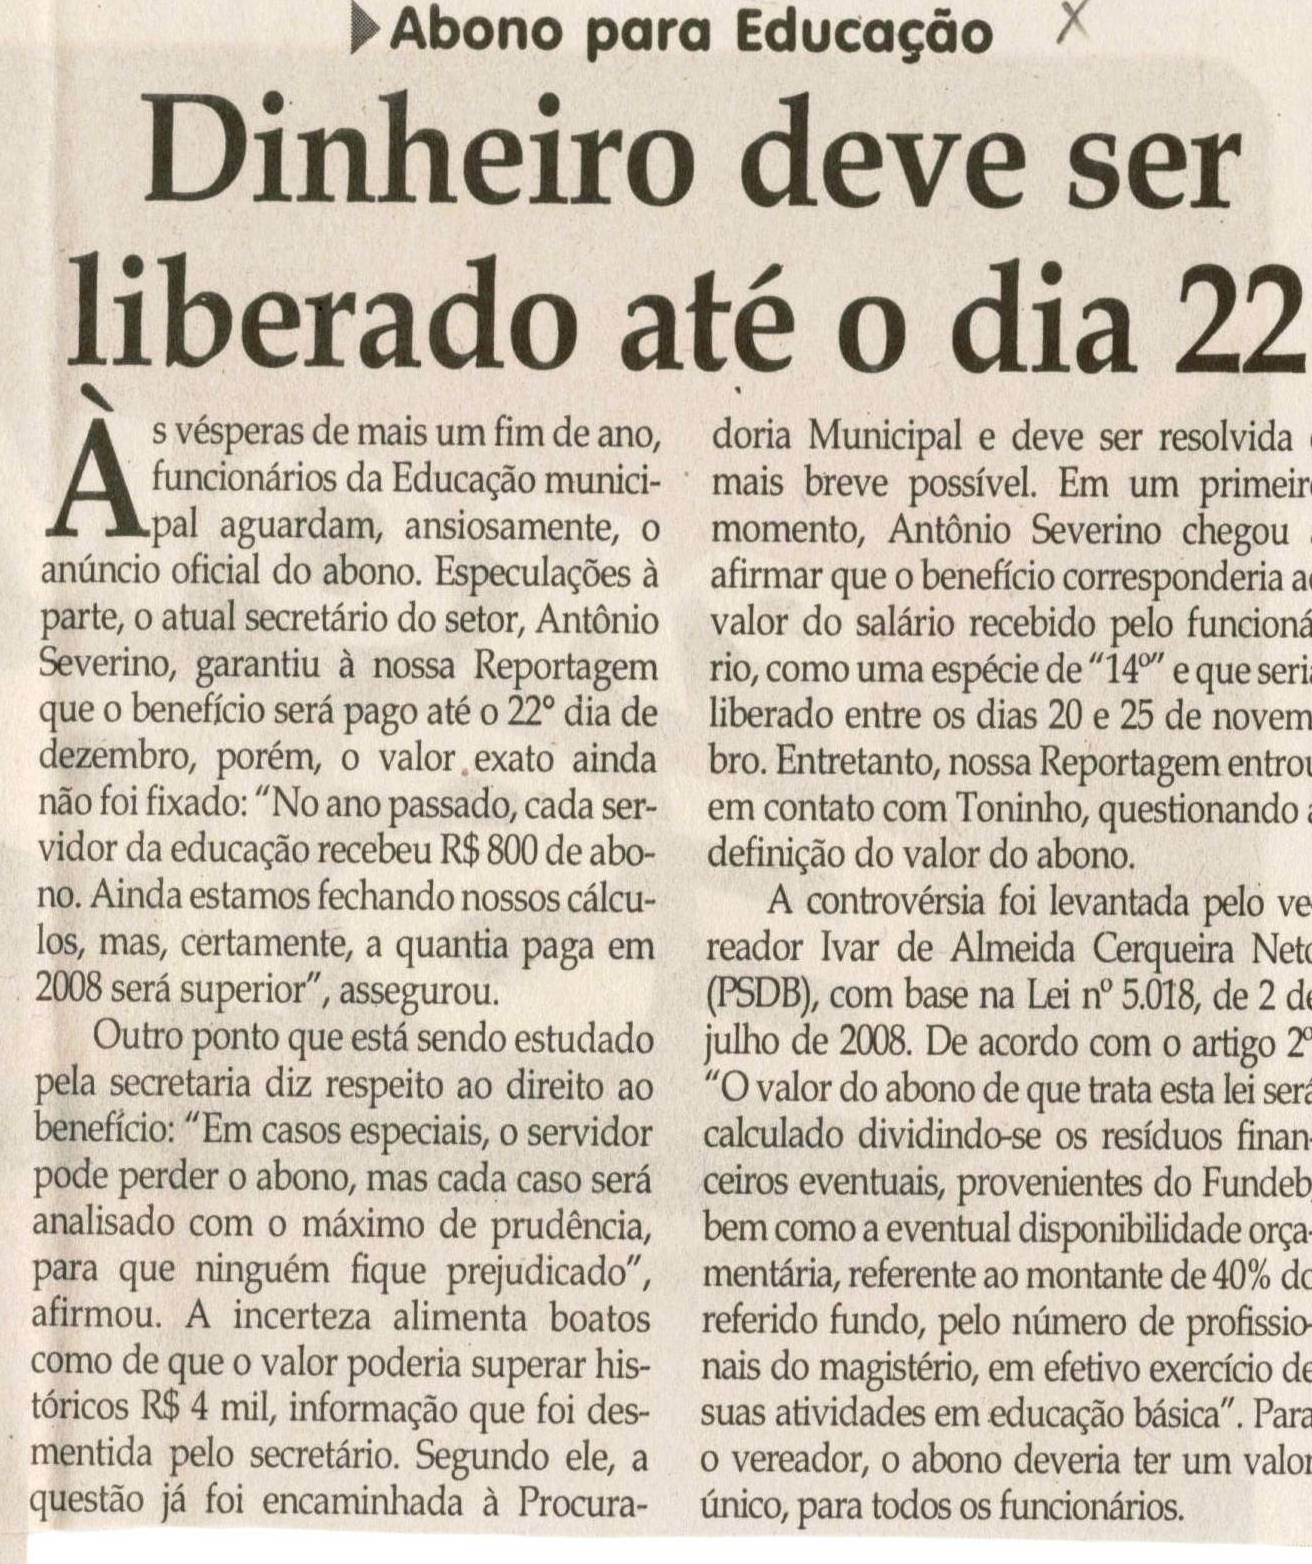 Abono para Educação: dinheiro deve ser liberado até o dia 22. Jornal Correio da Cidade, 13 dez. 2008, p. 04